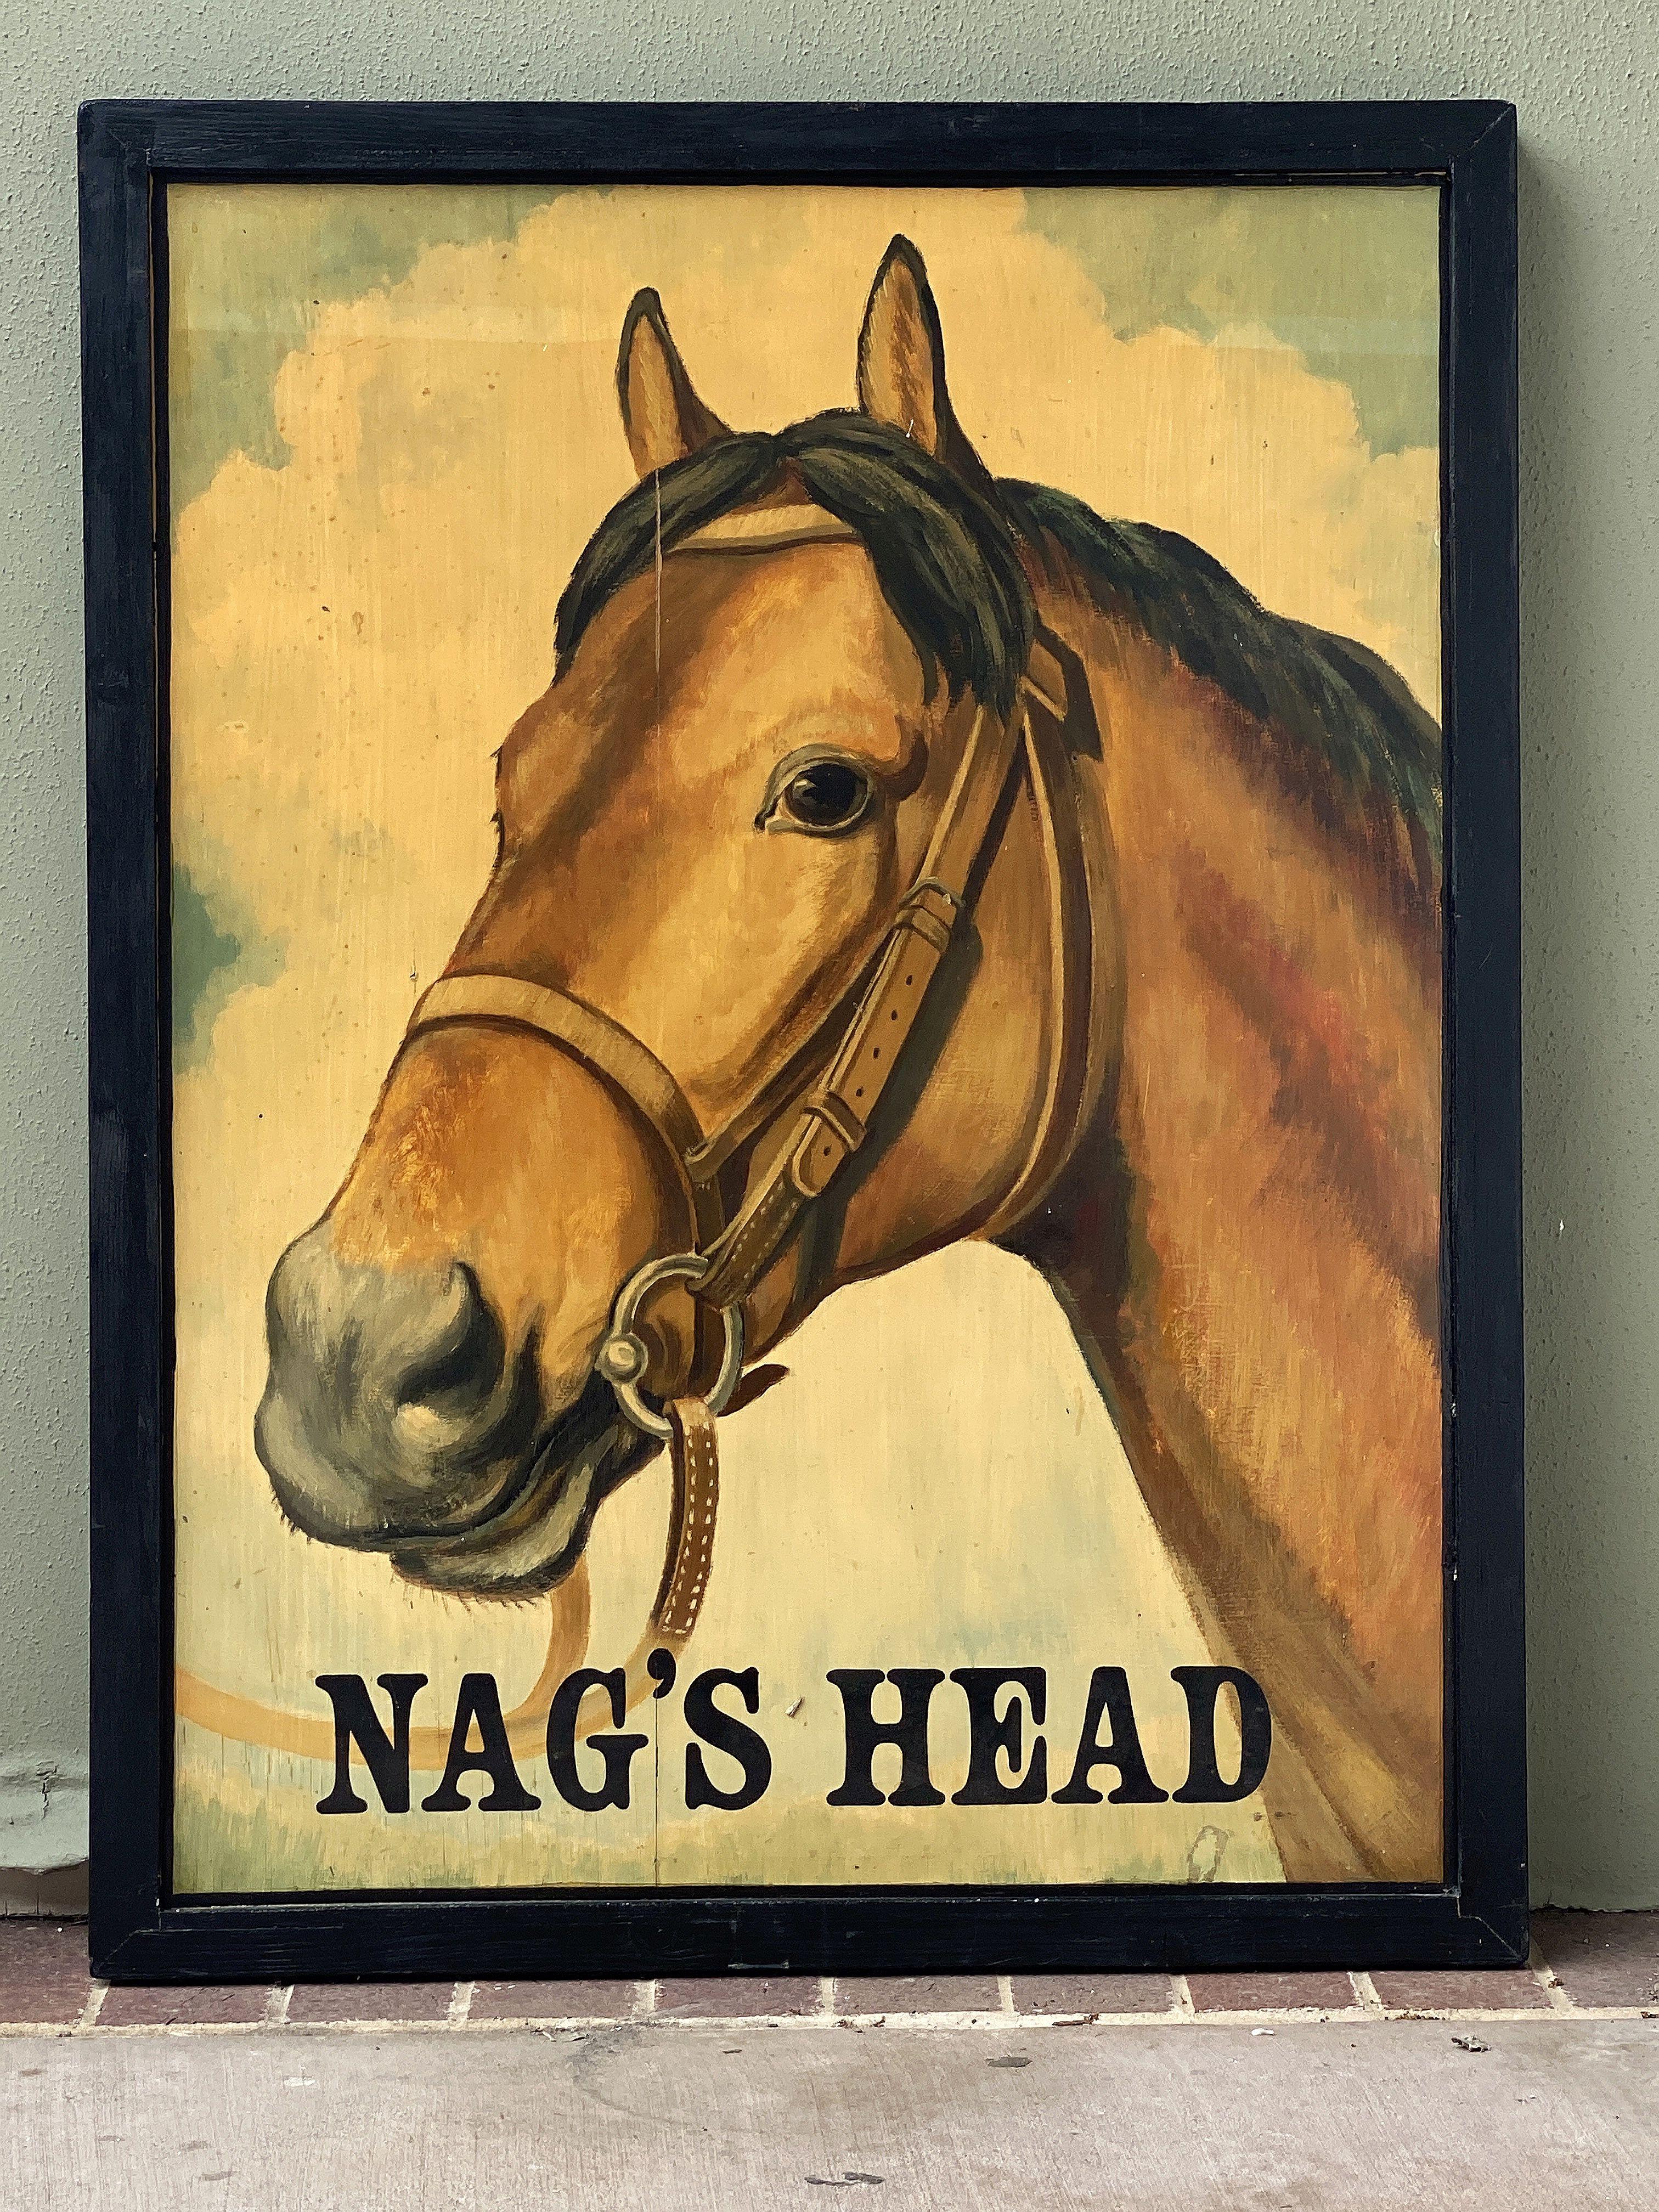 nags head pub sign